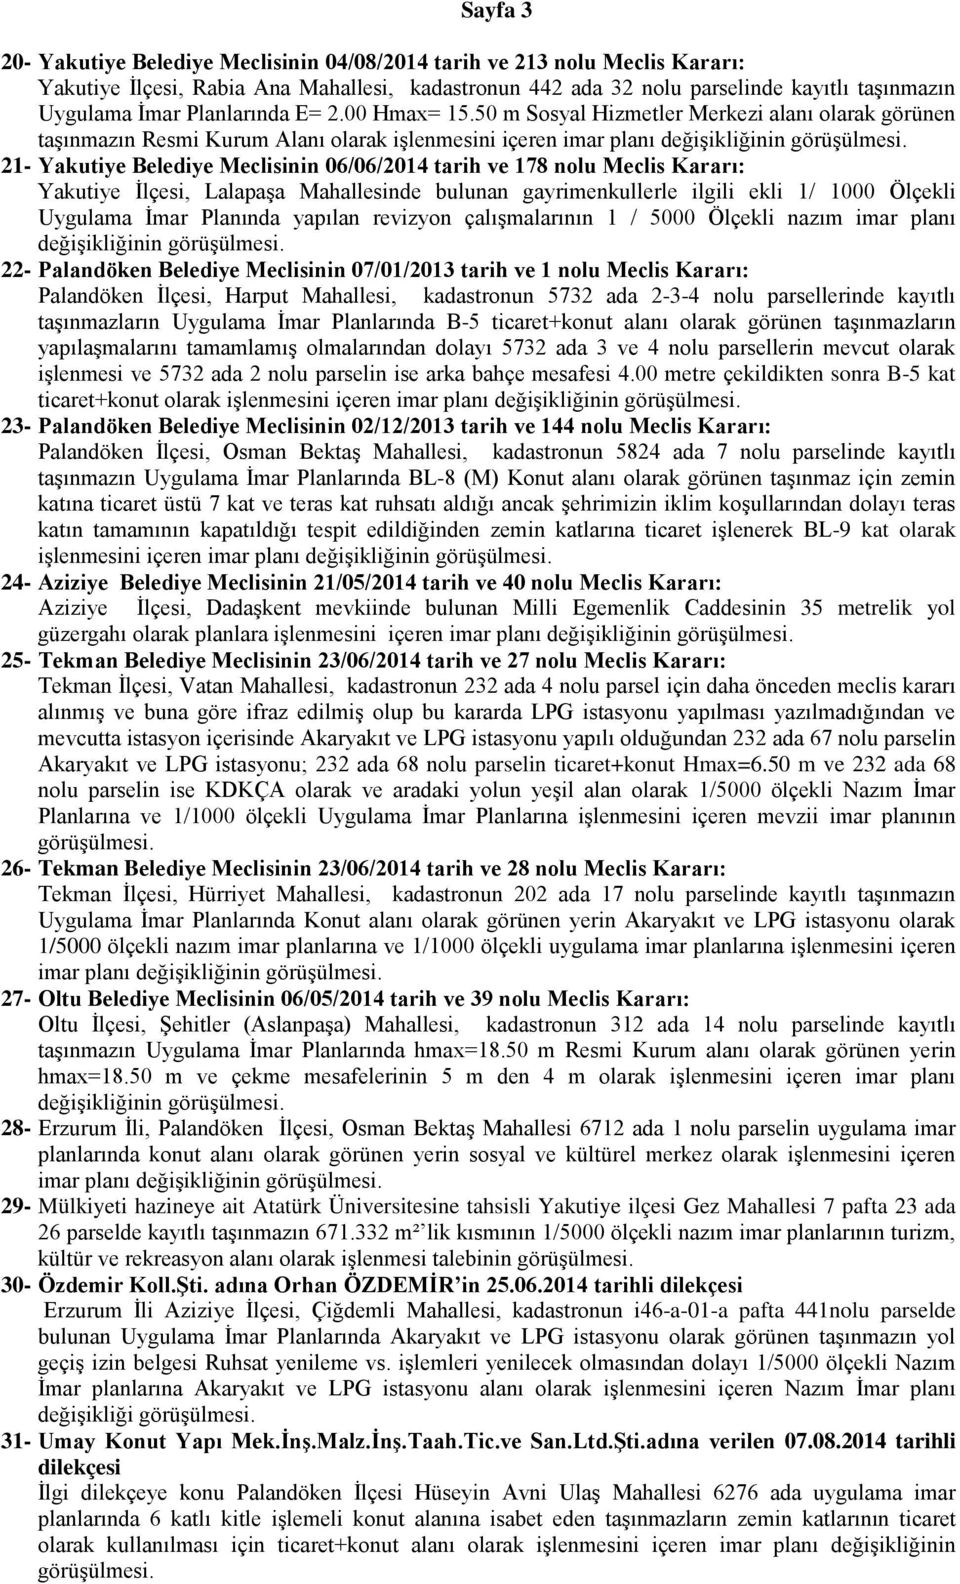 50 m Sosyal Hizmetler Merkezi alanı olarak görünen taşınmazın Resmi Kurum Alanı olarak işlenmesini içeren imar planı değişikliğinin 21- Yakutiye Belediye Meclisinin 06/06/2014 tarih ve 178 nolu